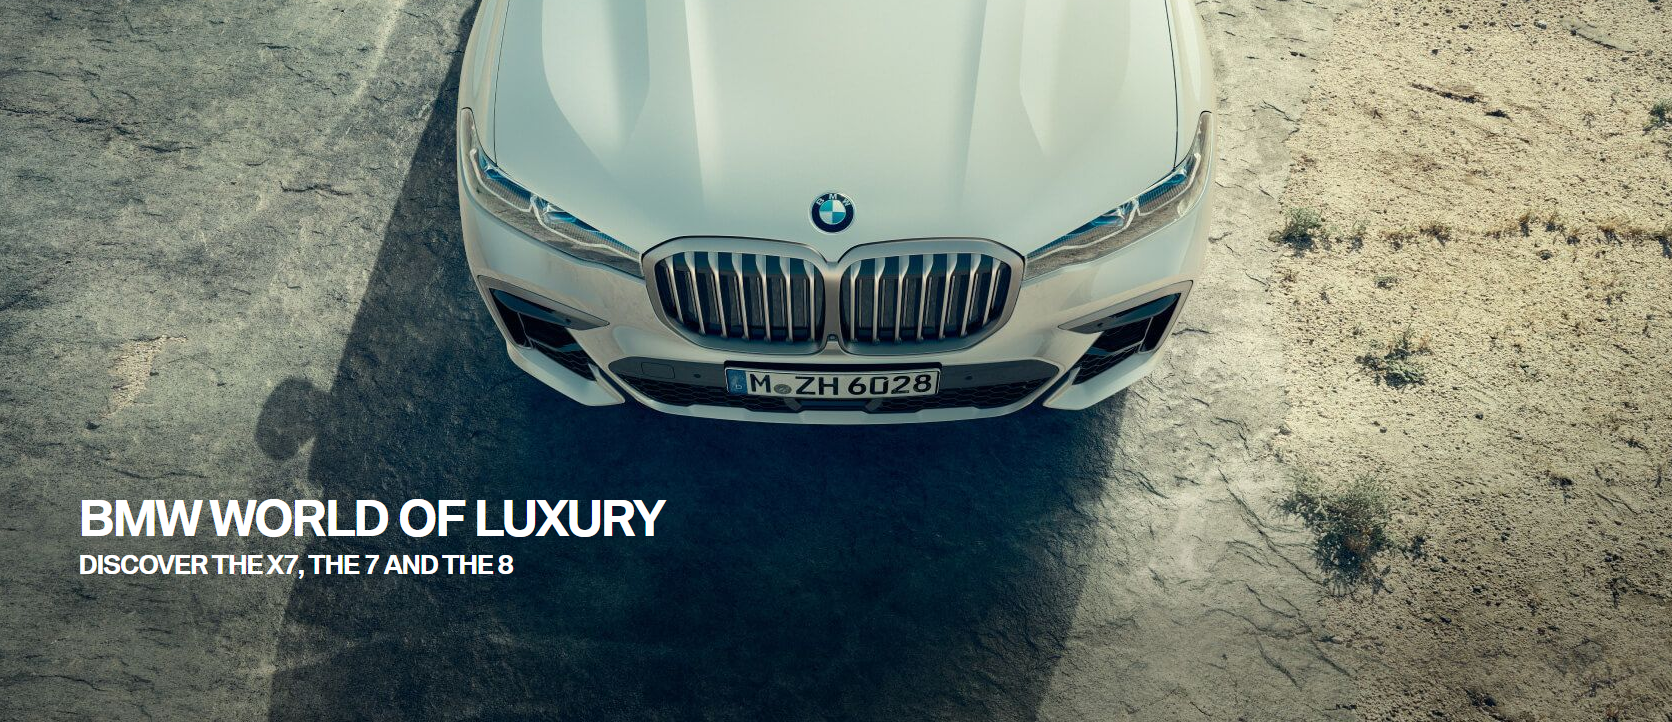 งาน BMW World of Luxury เชิญชวนผู้ที่รักและหลงใหลใน บีเอ็มดับเบิลยูทั่วประเทศ มาสัมผัสกับทัพยนตรกรรมเหนือระดับ 